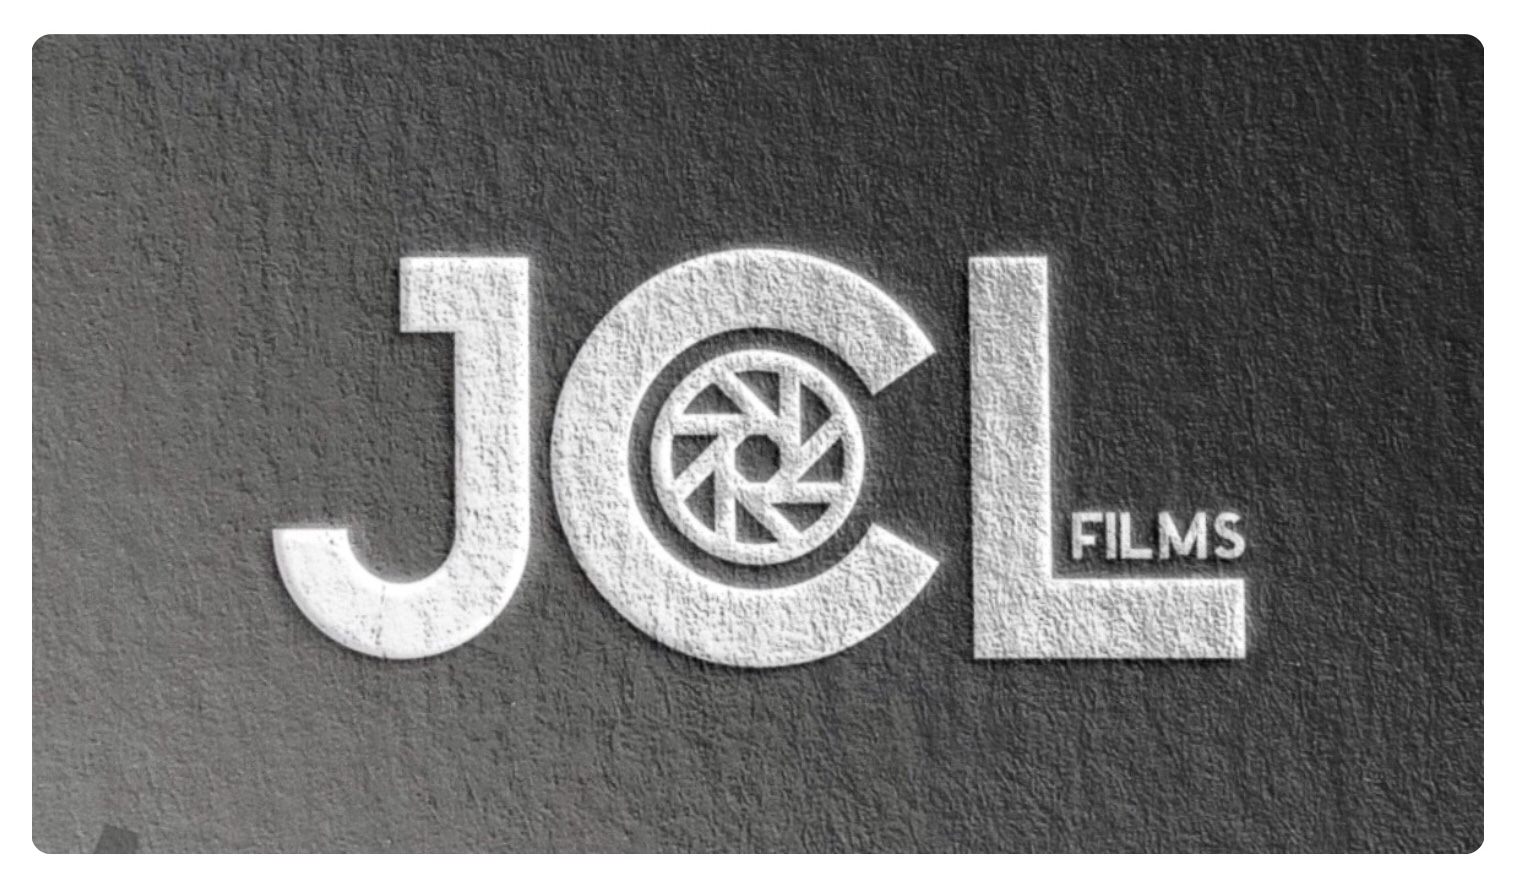 JCL Films Productions